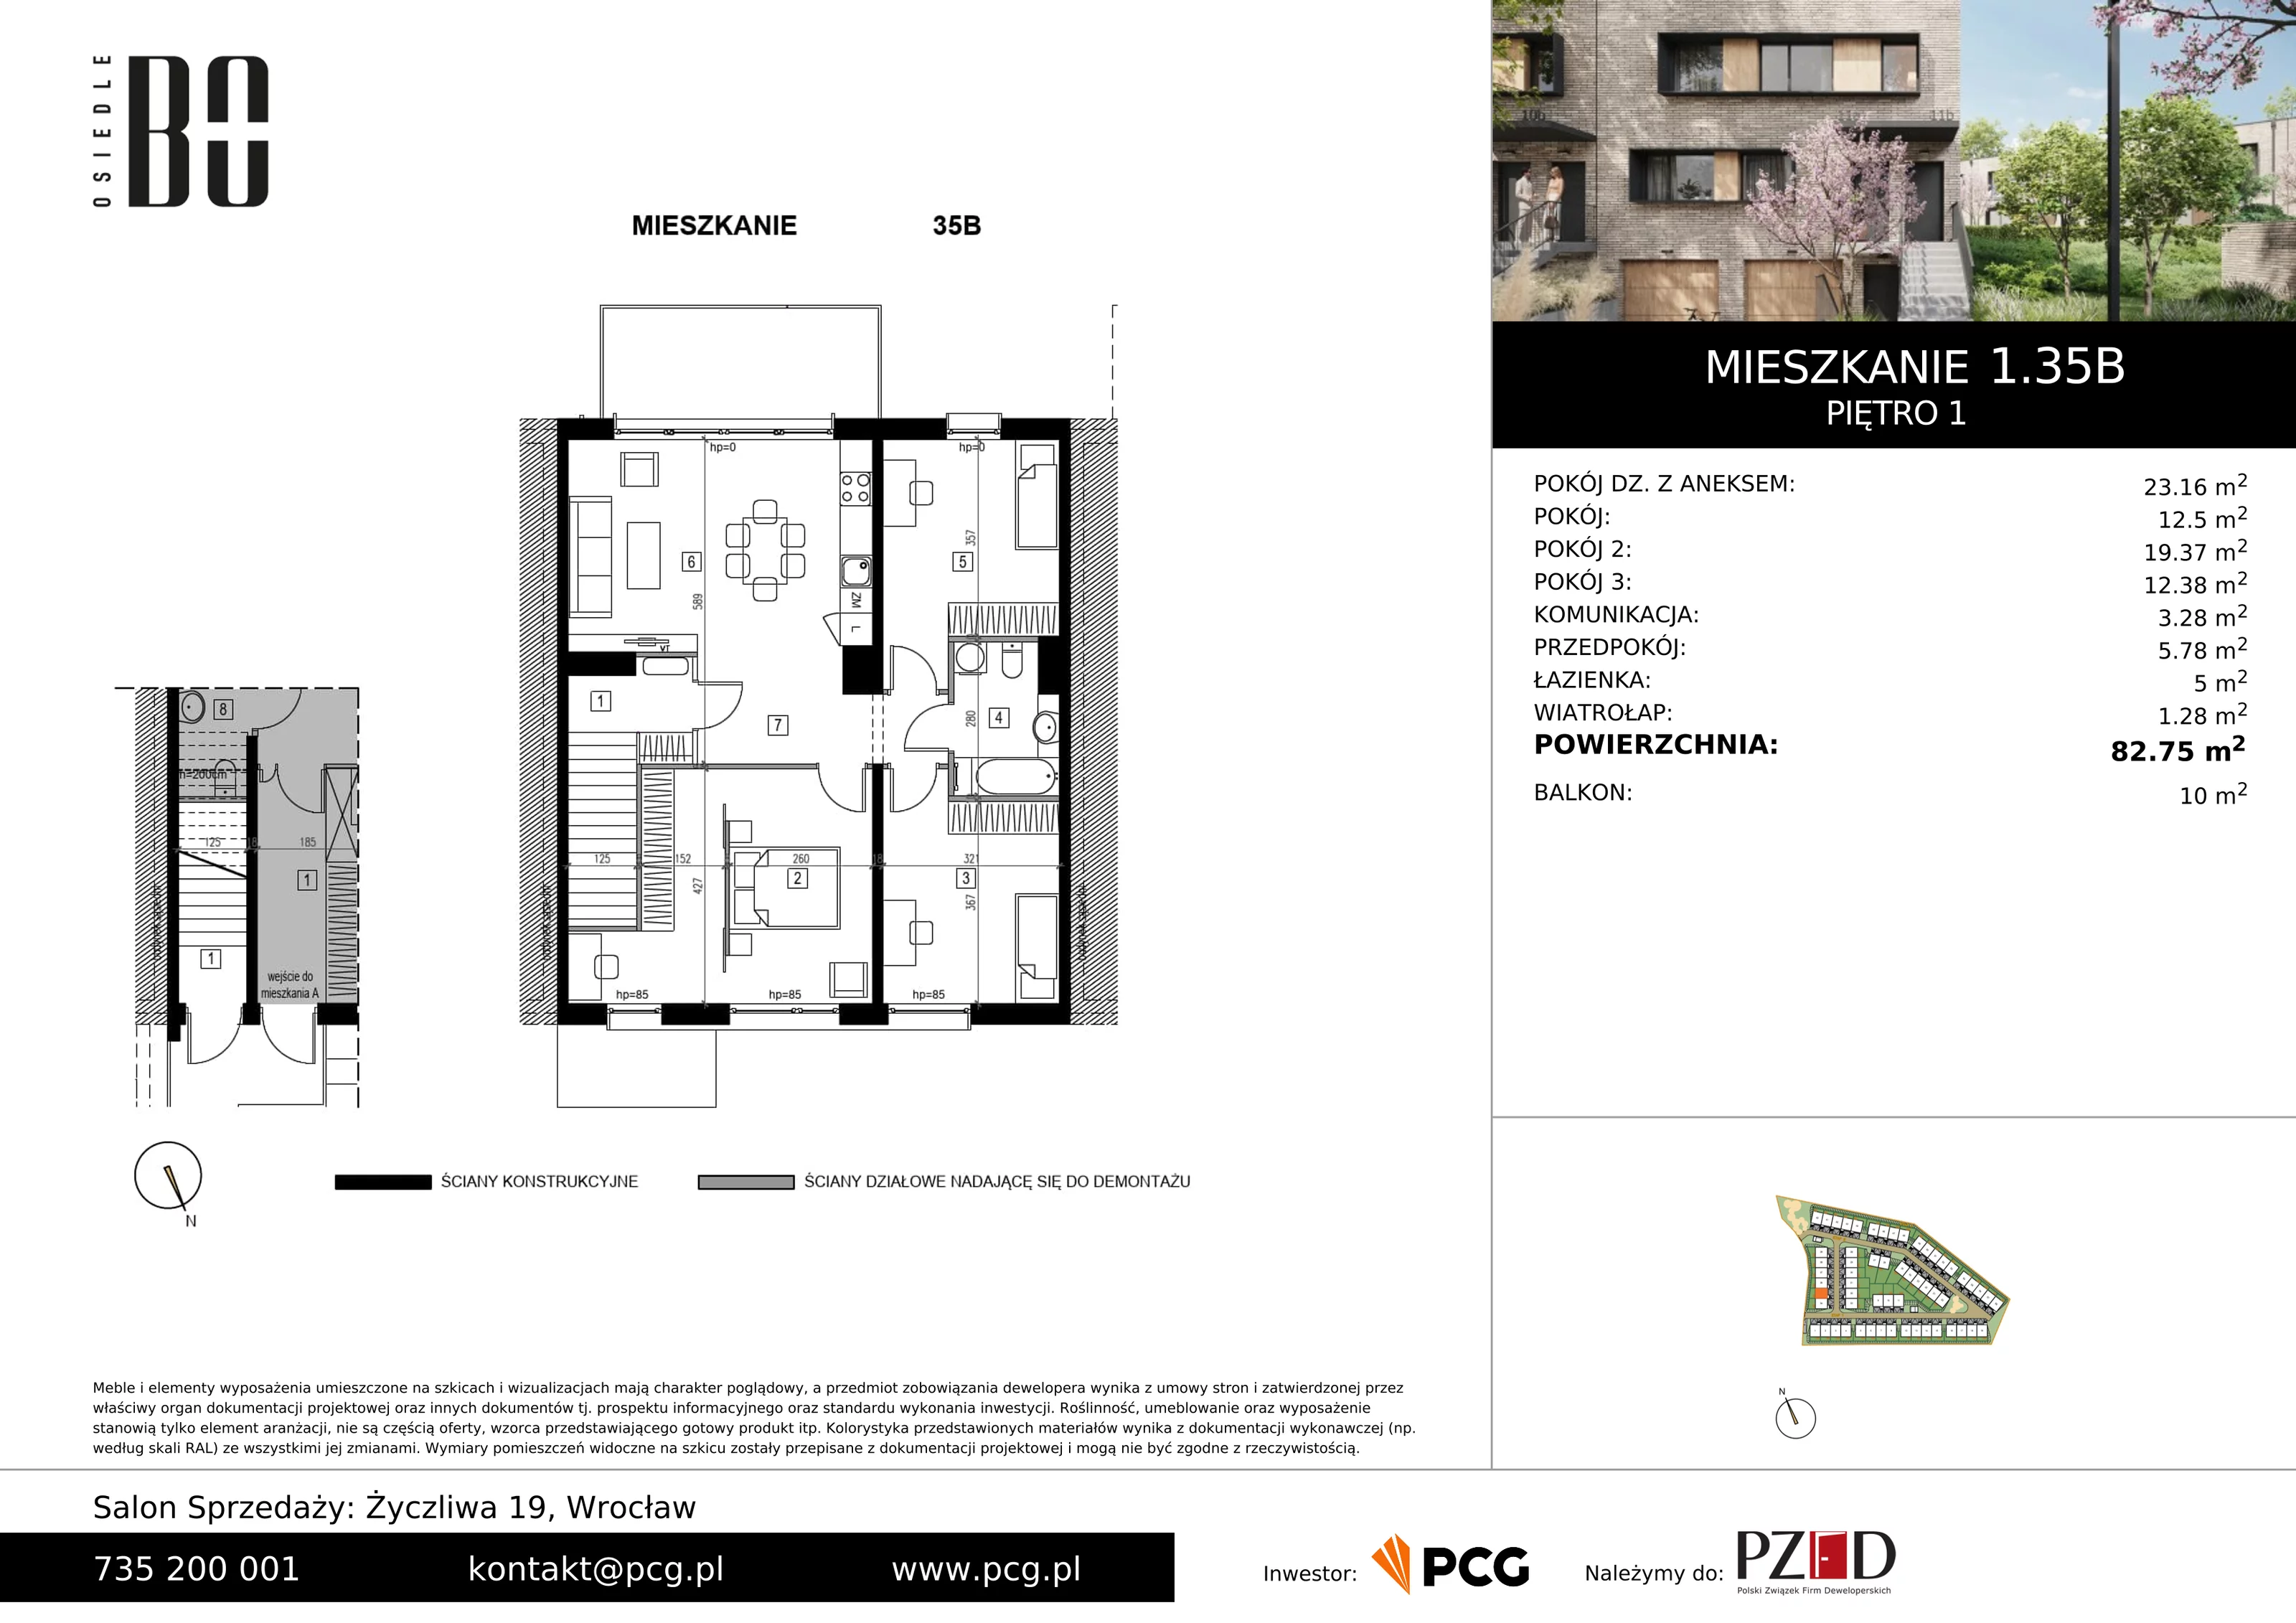 Apartament 82,75 m², piętro 1, oferta nr 1.35B, Osiedle BO, Wrocław, Kowale, ul. Bociana